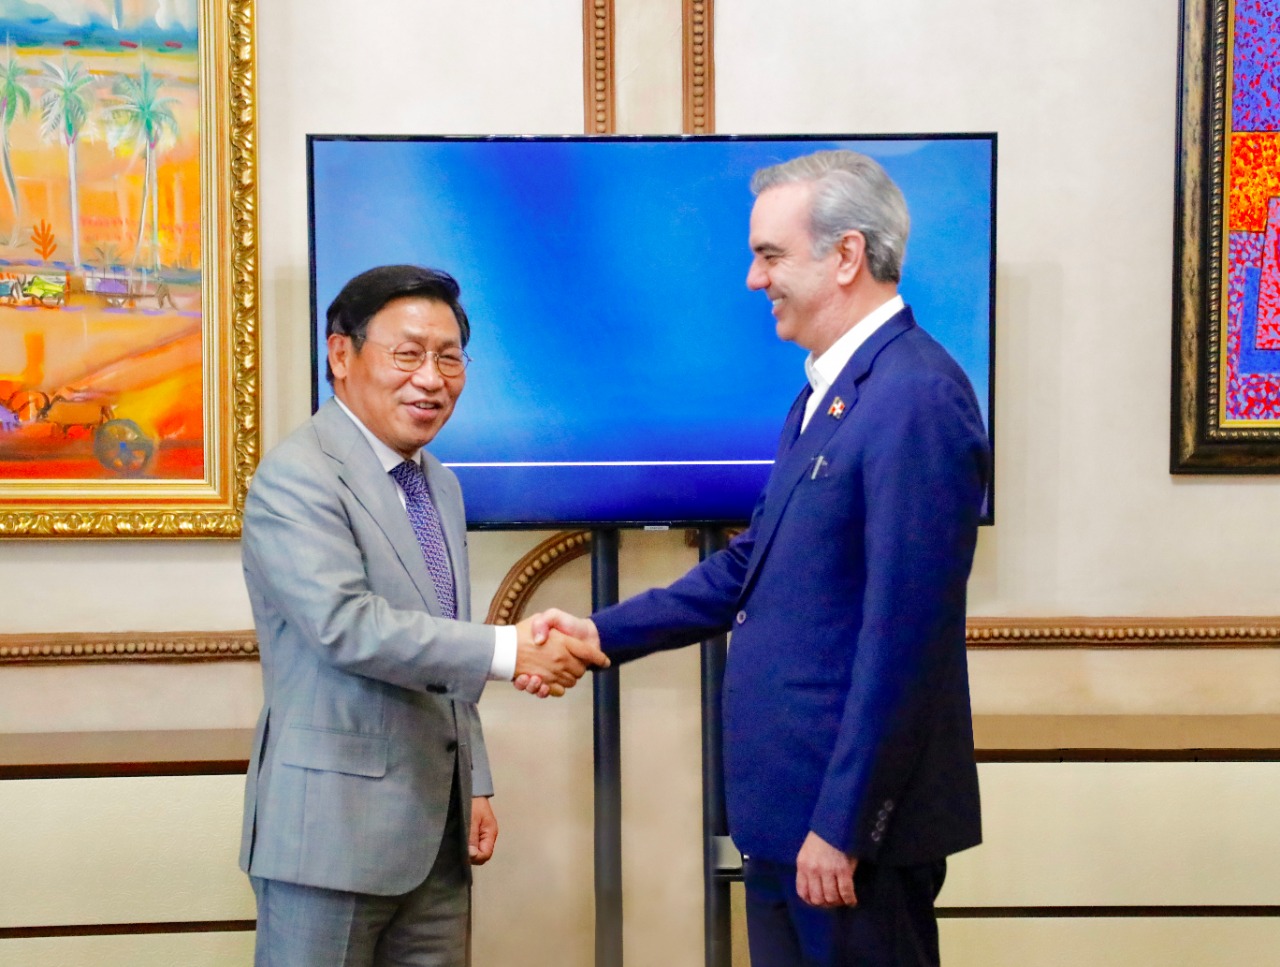 El presidente Luis Abinader se reúne con el jefe global de electrodomésticos digitales de Samsung en su visita a República Dominicana